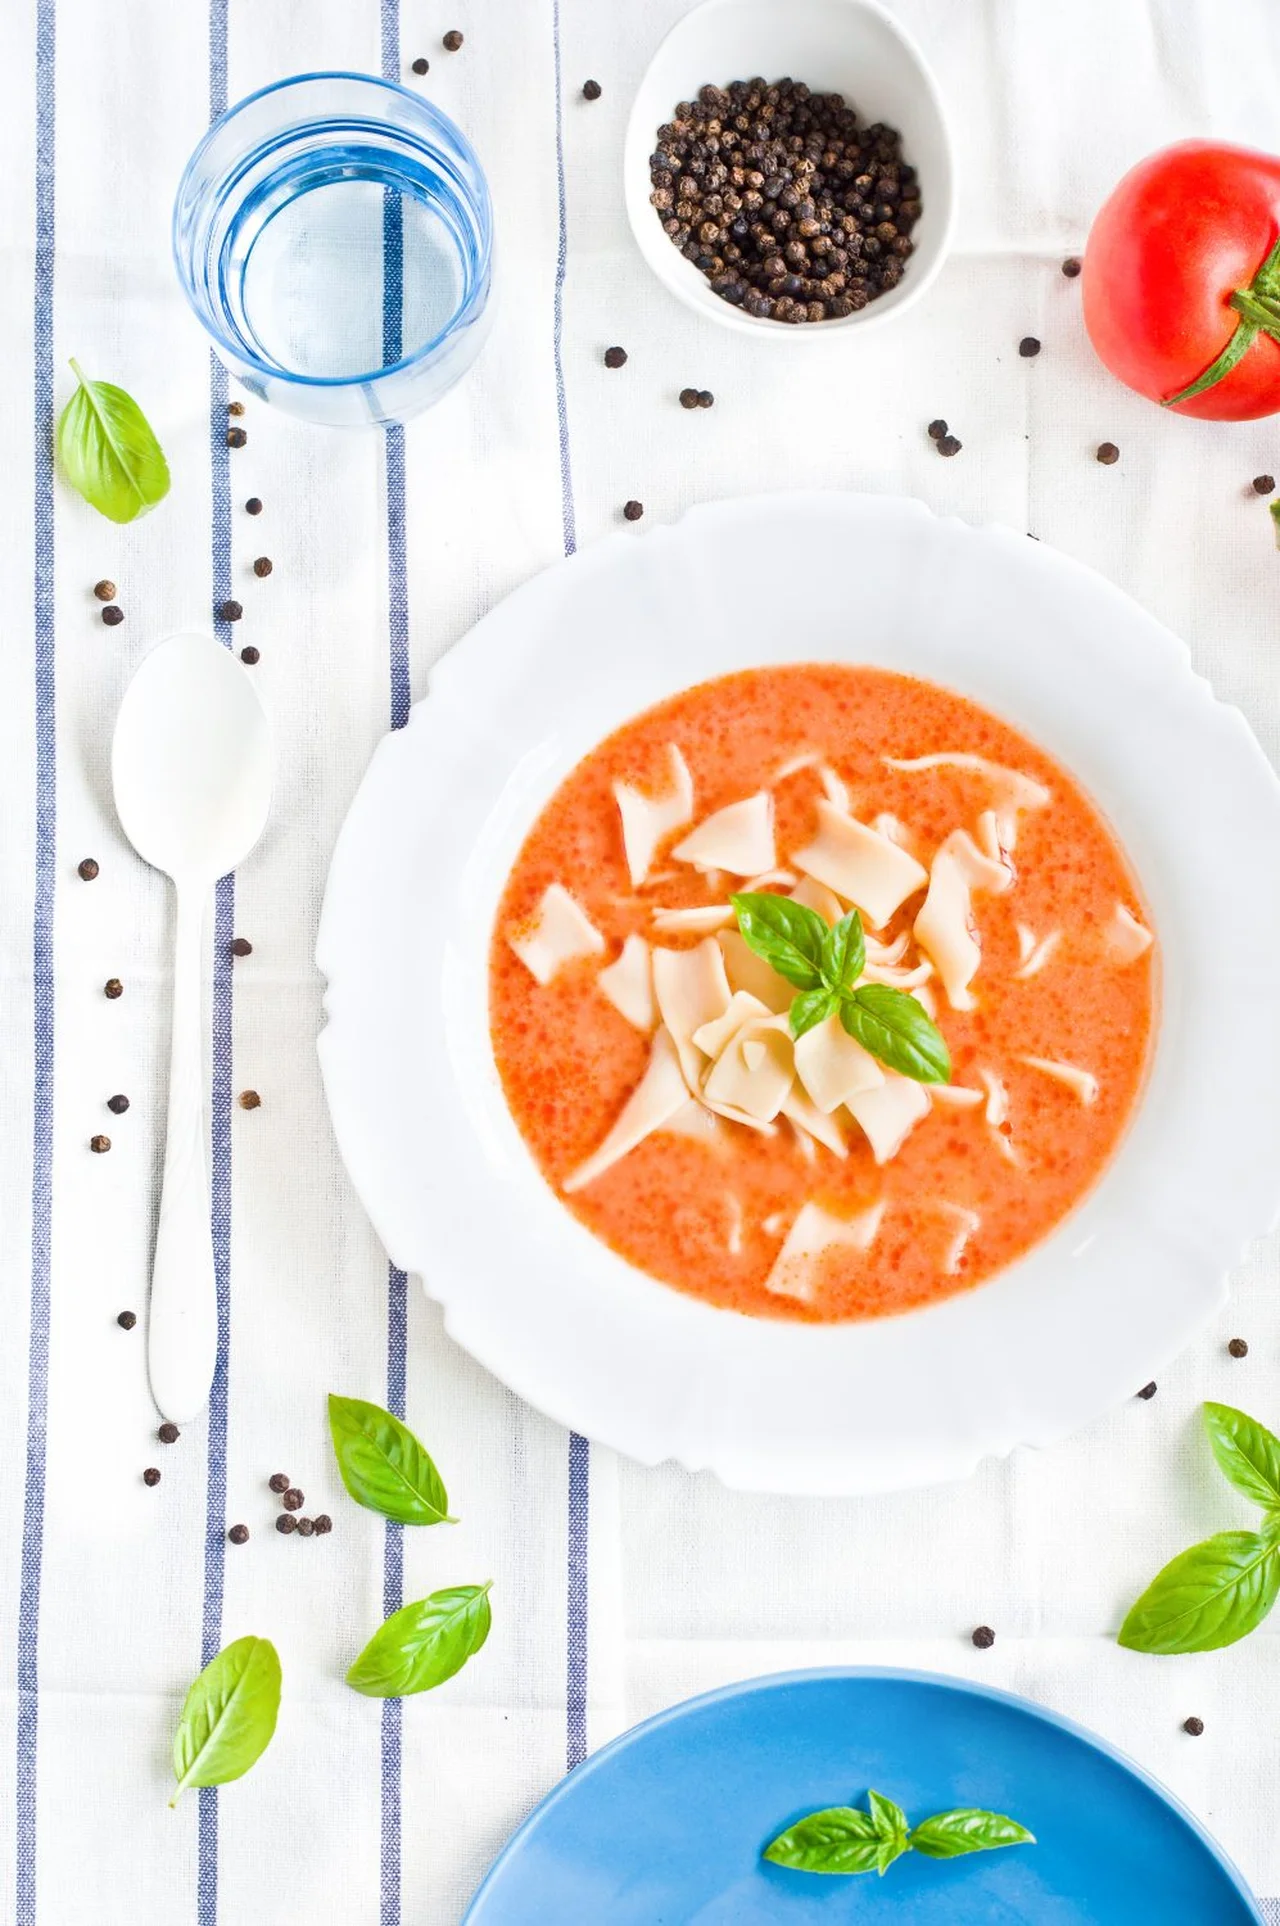 Zupa pomidorowa – klasyczna i domowa